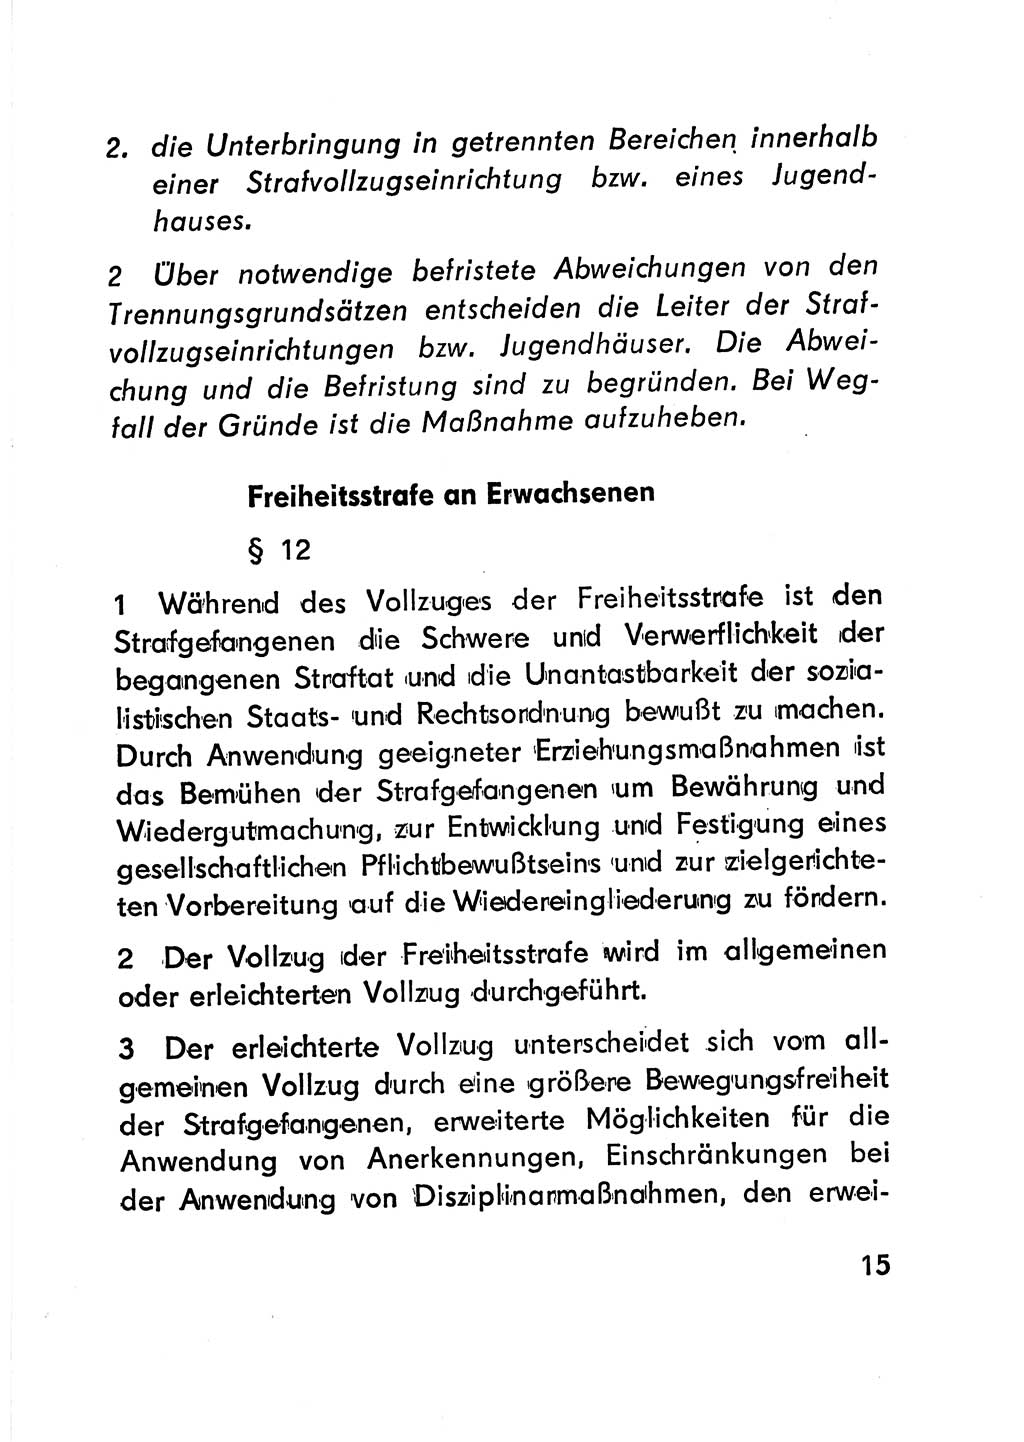 Gesetz über den Vollzug der Strafen mit Freiheitsentzug (Strafvollzugsgesetz) - StVG - [Deutsche Demokratische Republik (DDR)] 1977, Seite 15 (StVG DDR 1977, S. 15)